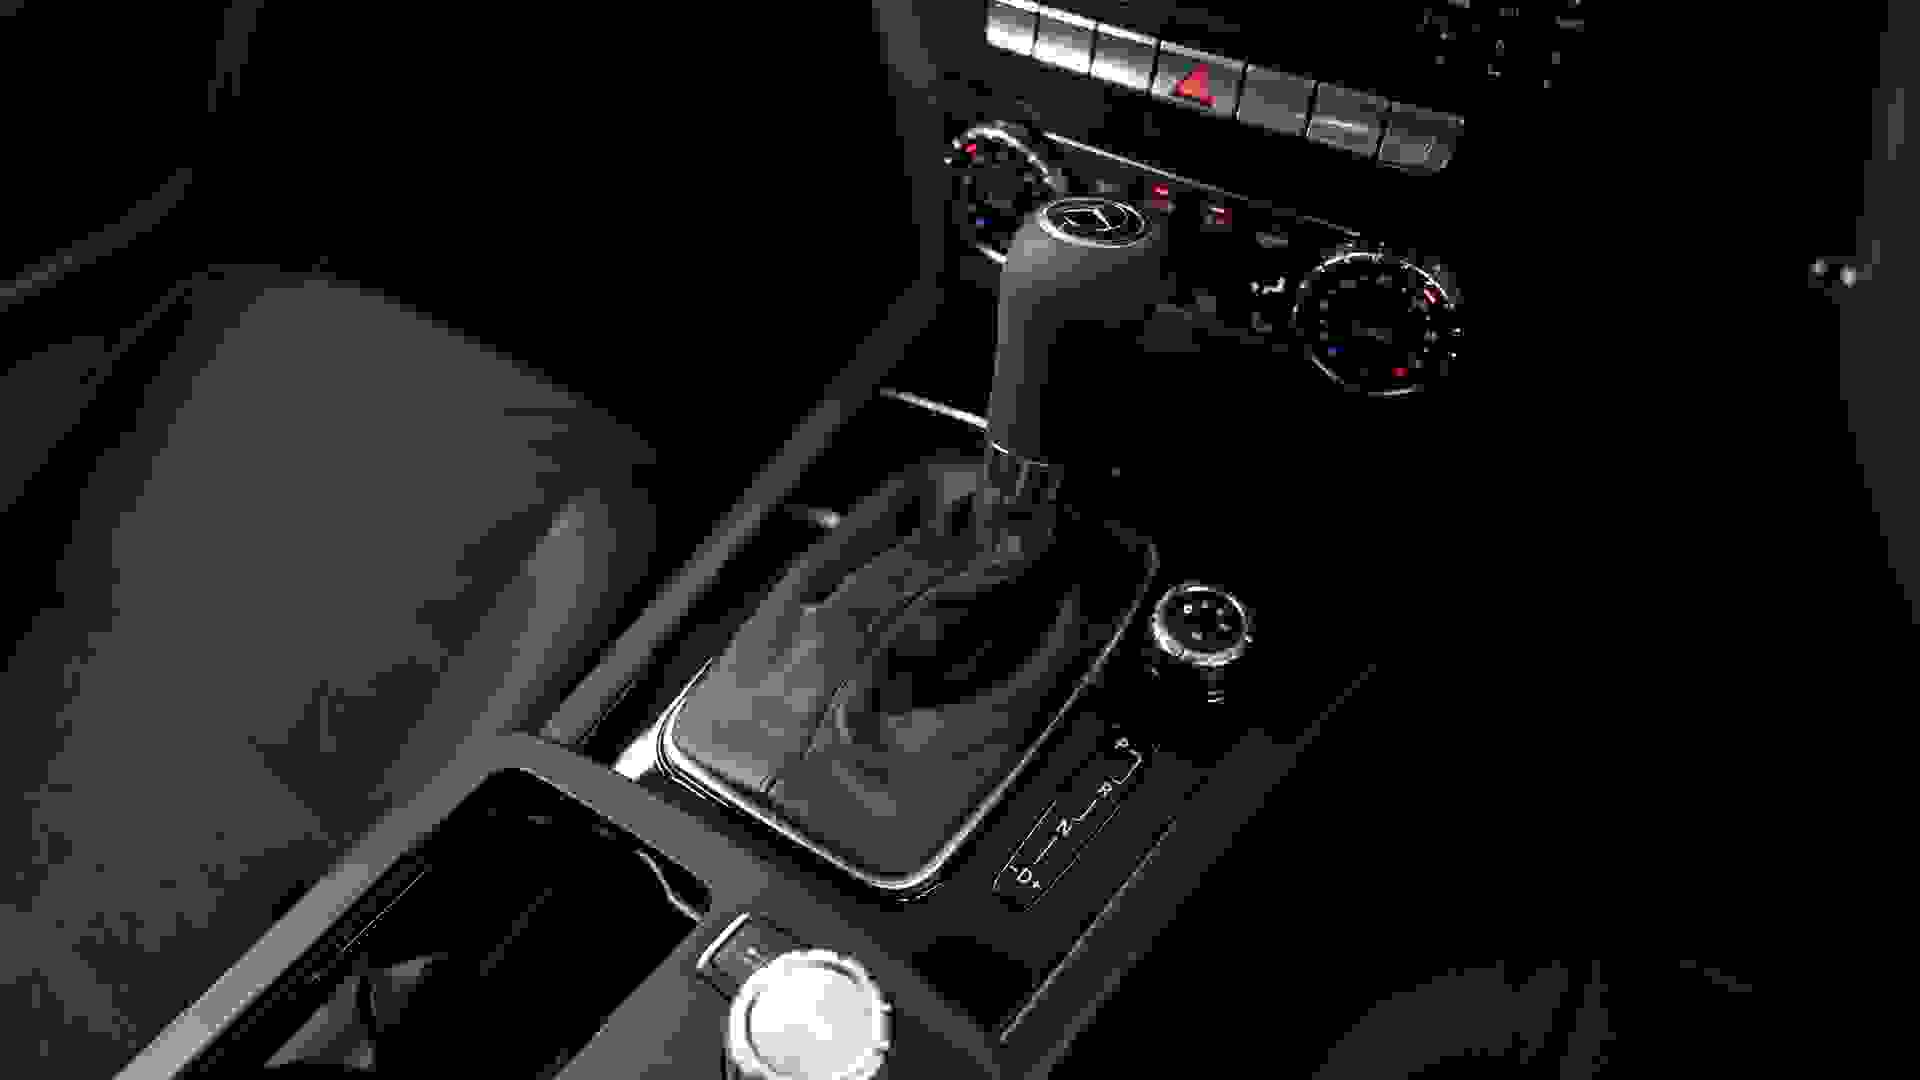 Mercedes-Benz C63 AMG Photo ace927b2-42ba-413c-b083-53e2b18ffc7d.jpg